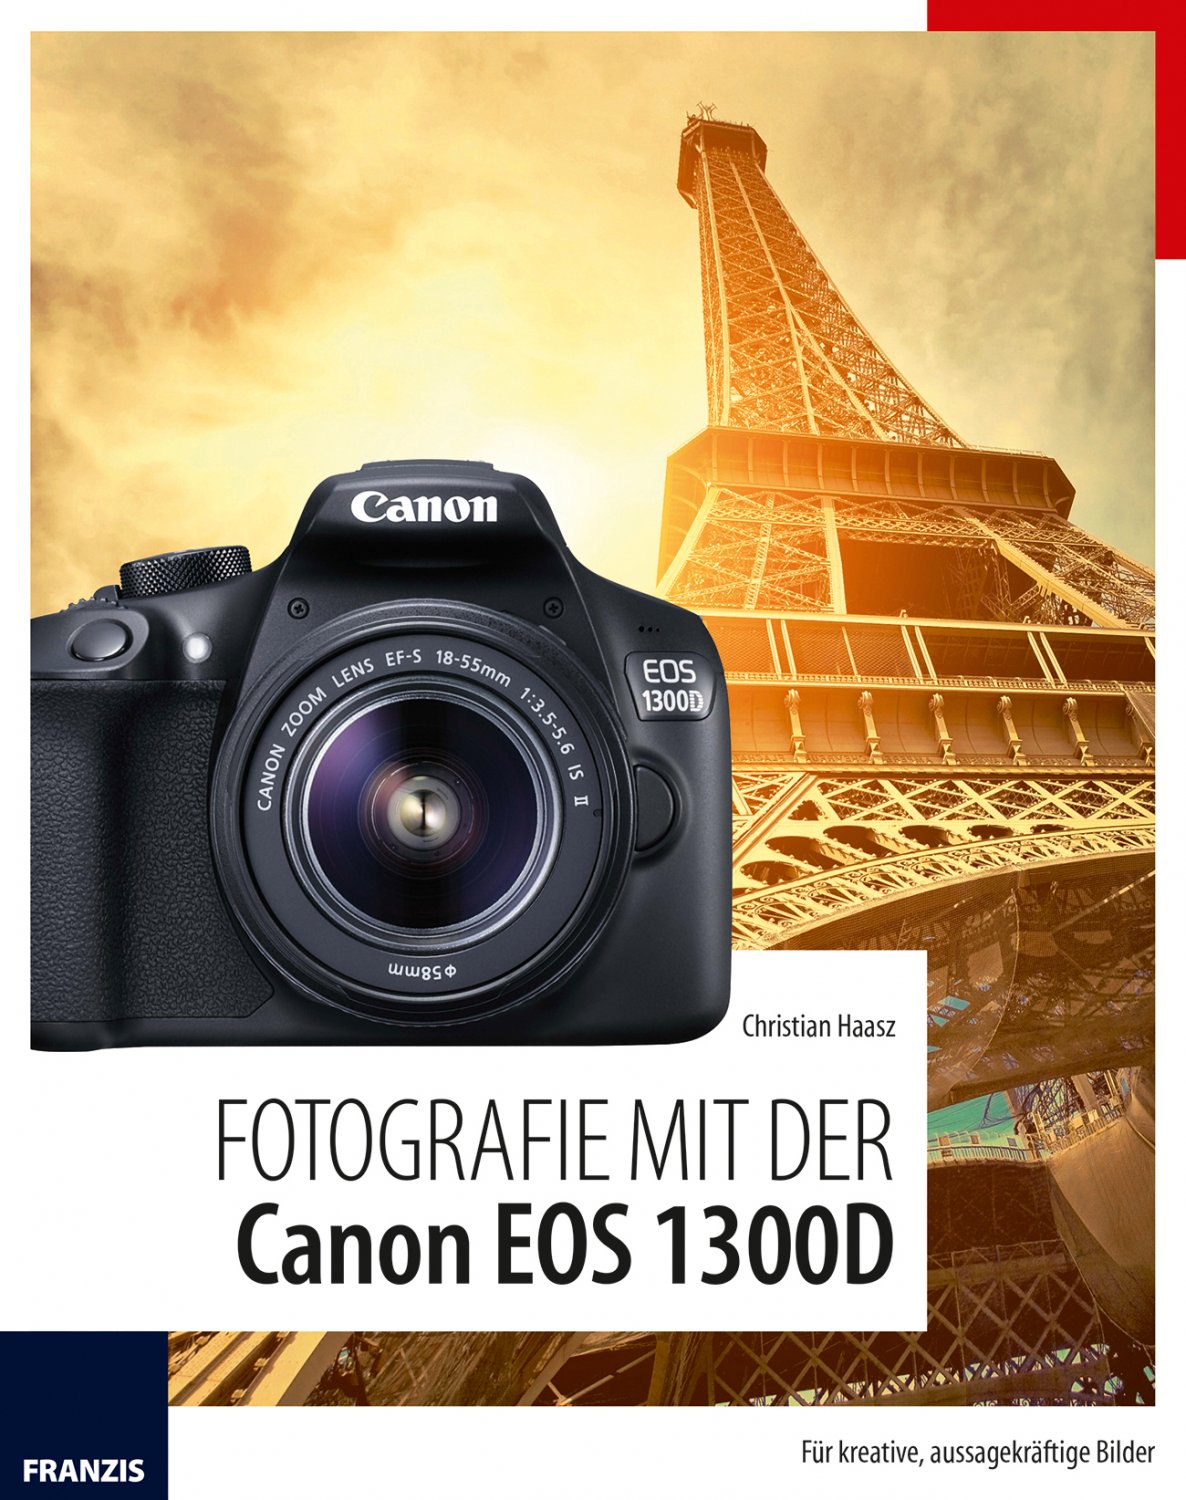 Fotografie mit der Canon EOS 20D   Für kreative, aussagekräftige Bilder